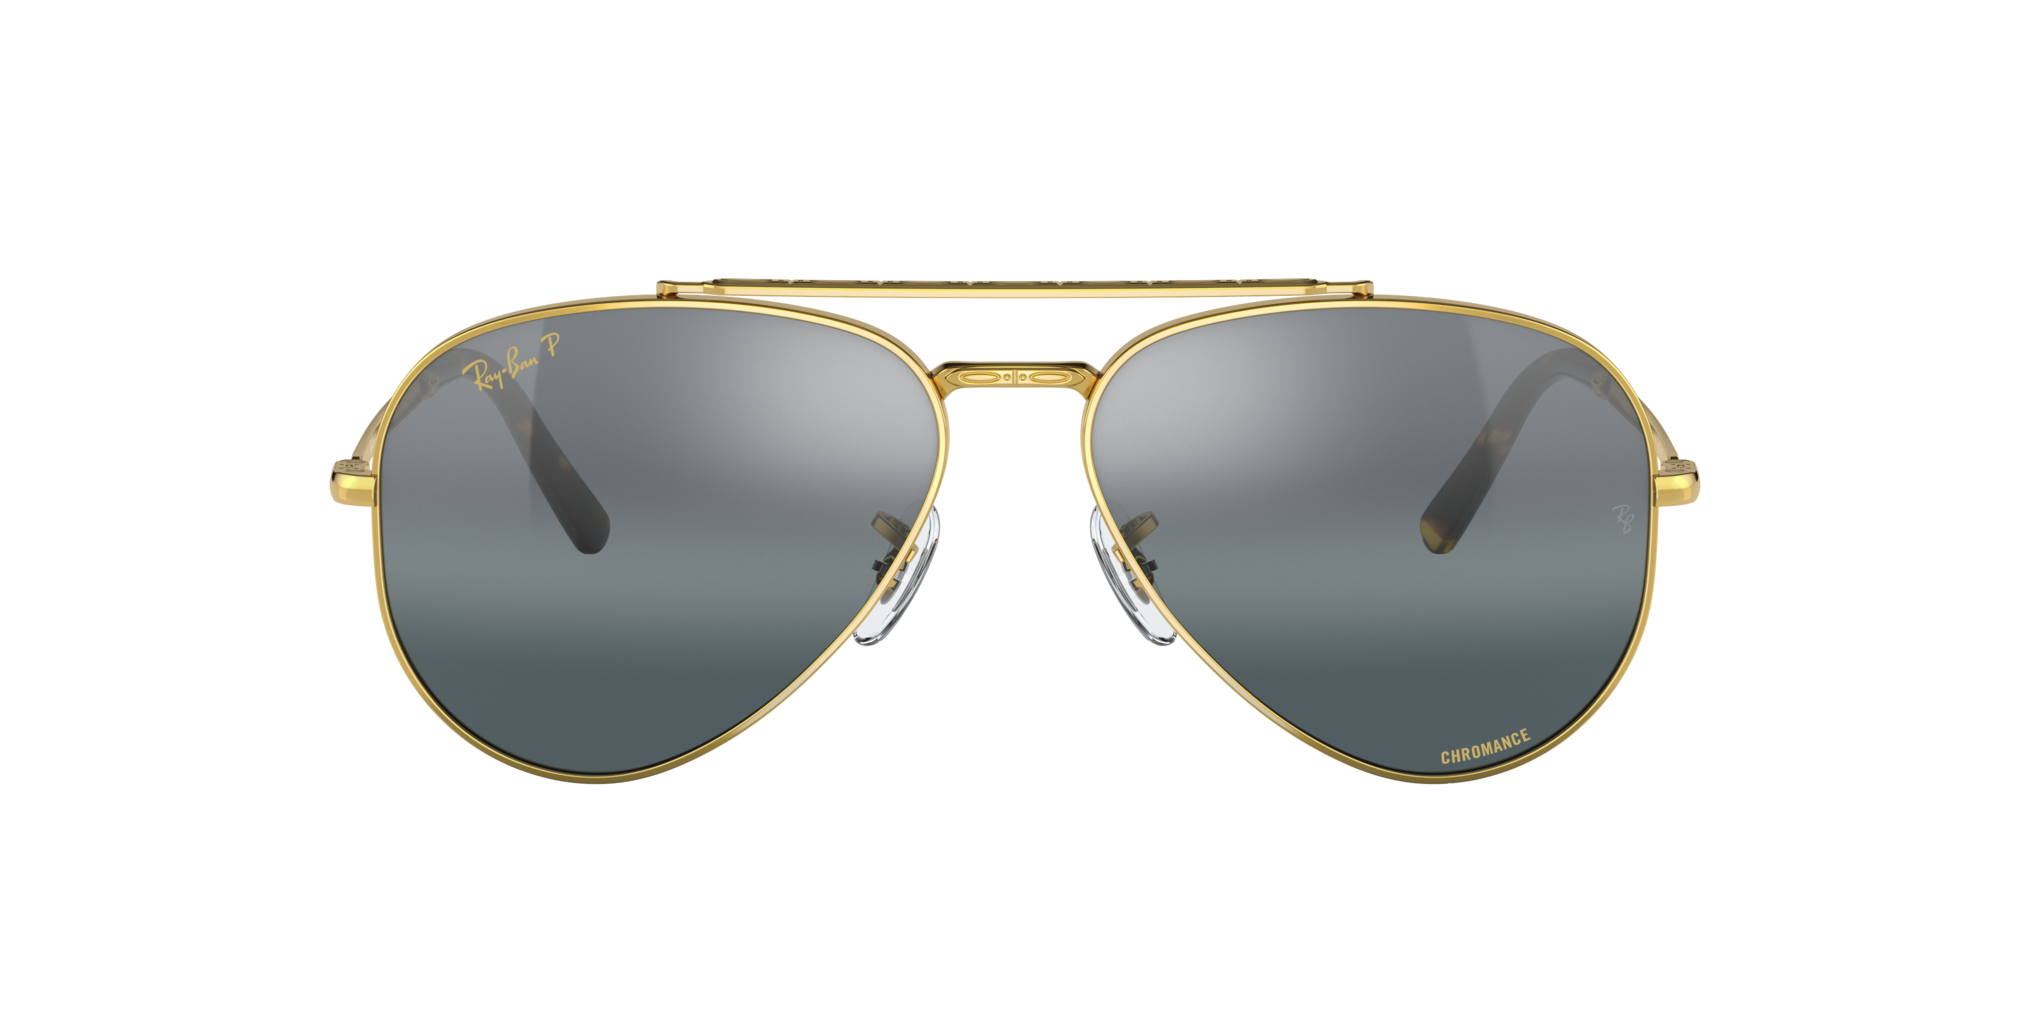 Buy Ray Ban New Aviator Sunglasses Online 